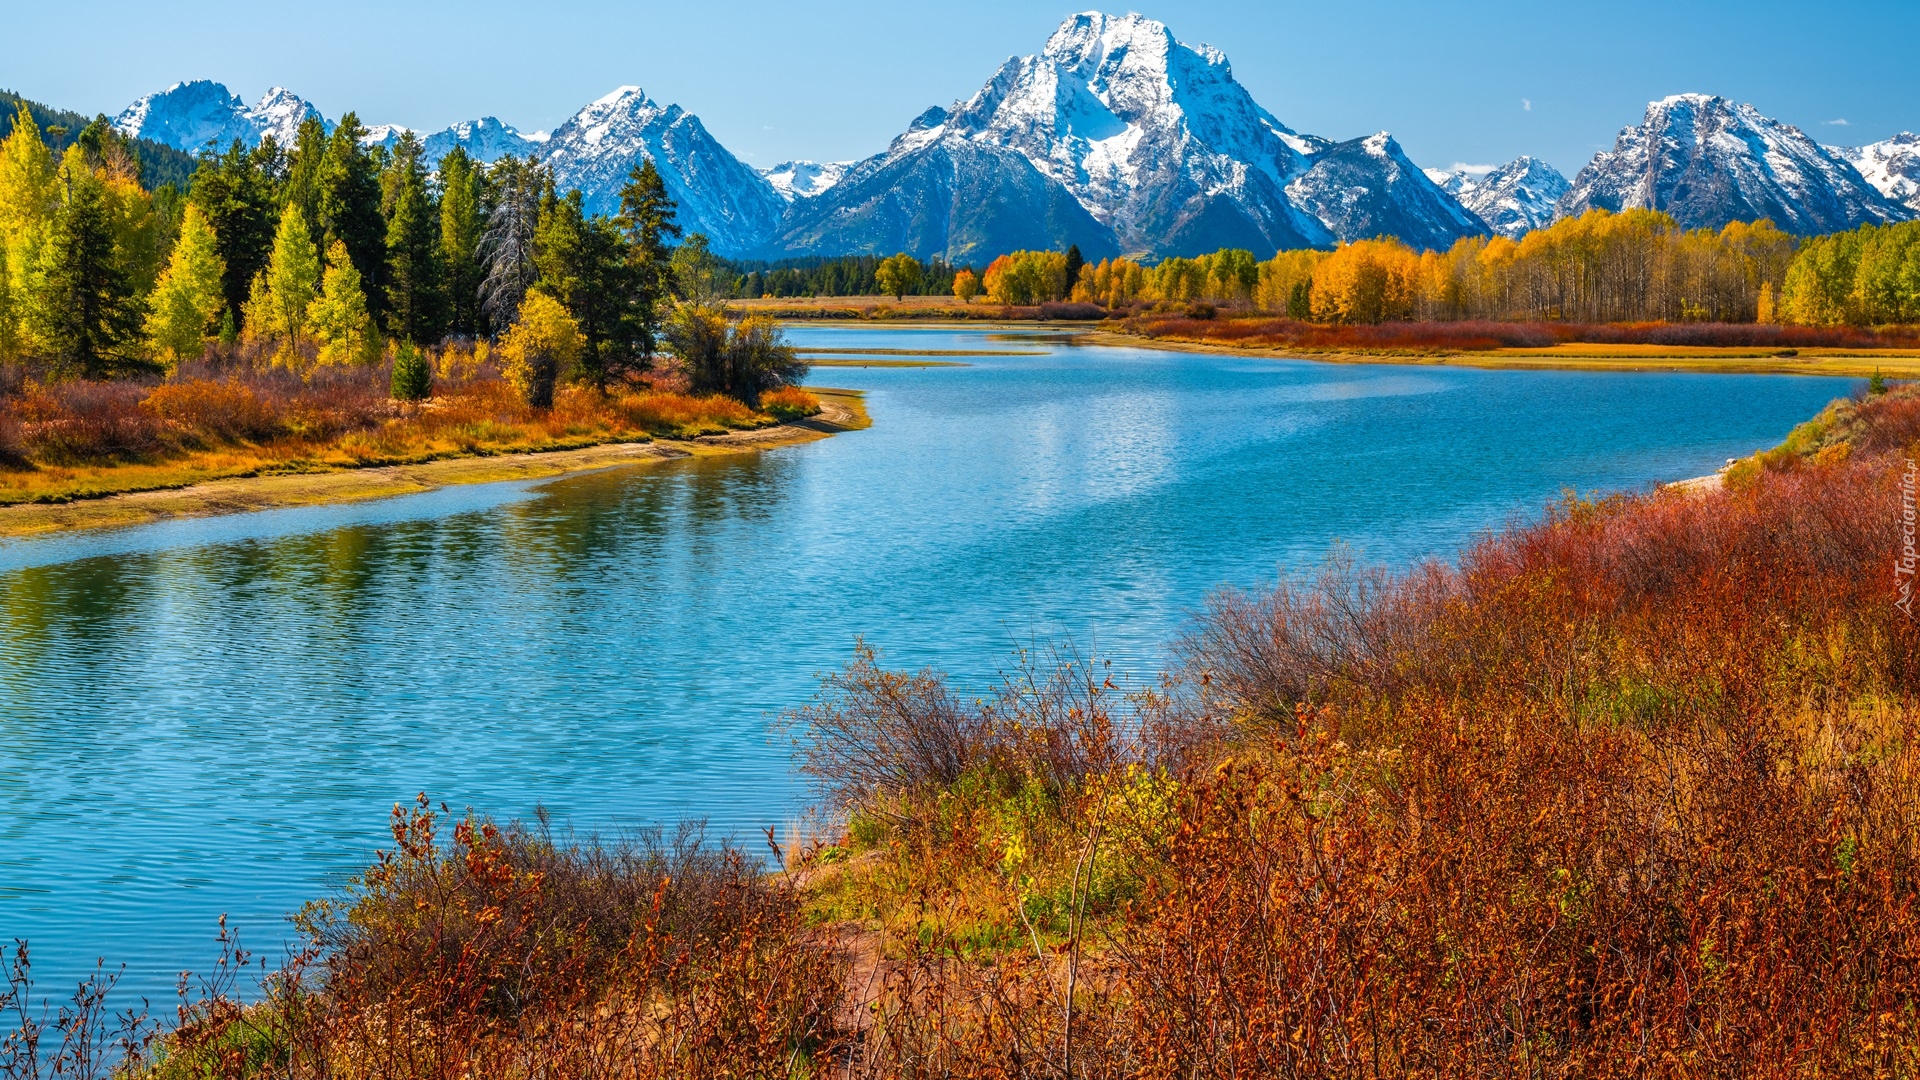 Park Narodowy Grand Teton, Rzeka, Snake River, Góry, Teton Range, Drzewa, Trawy, Jesień, Stan Wyoming, Stany Zjednoczone